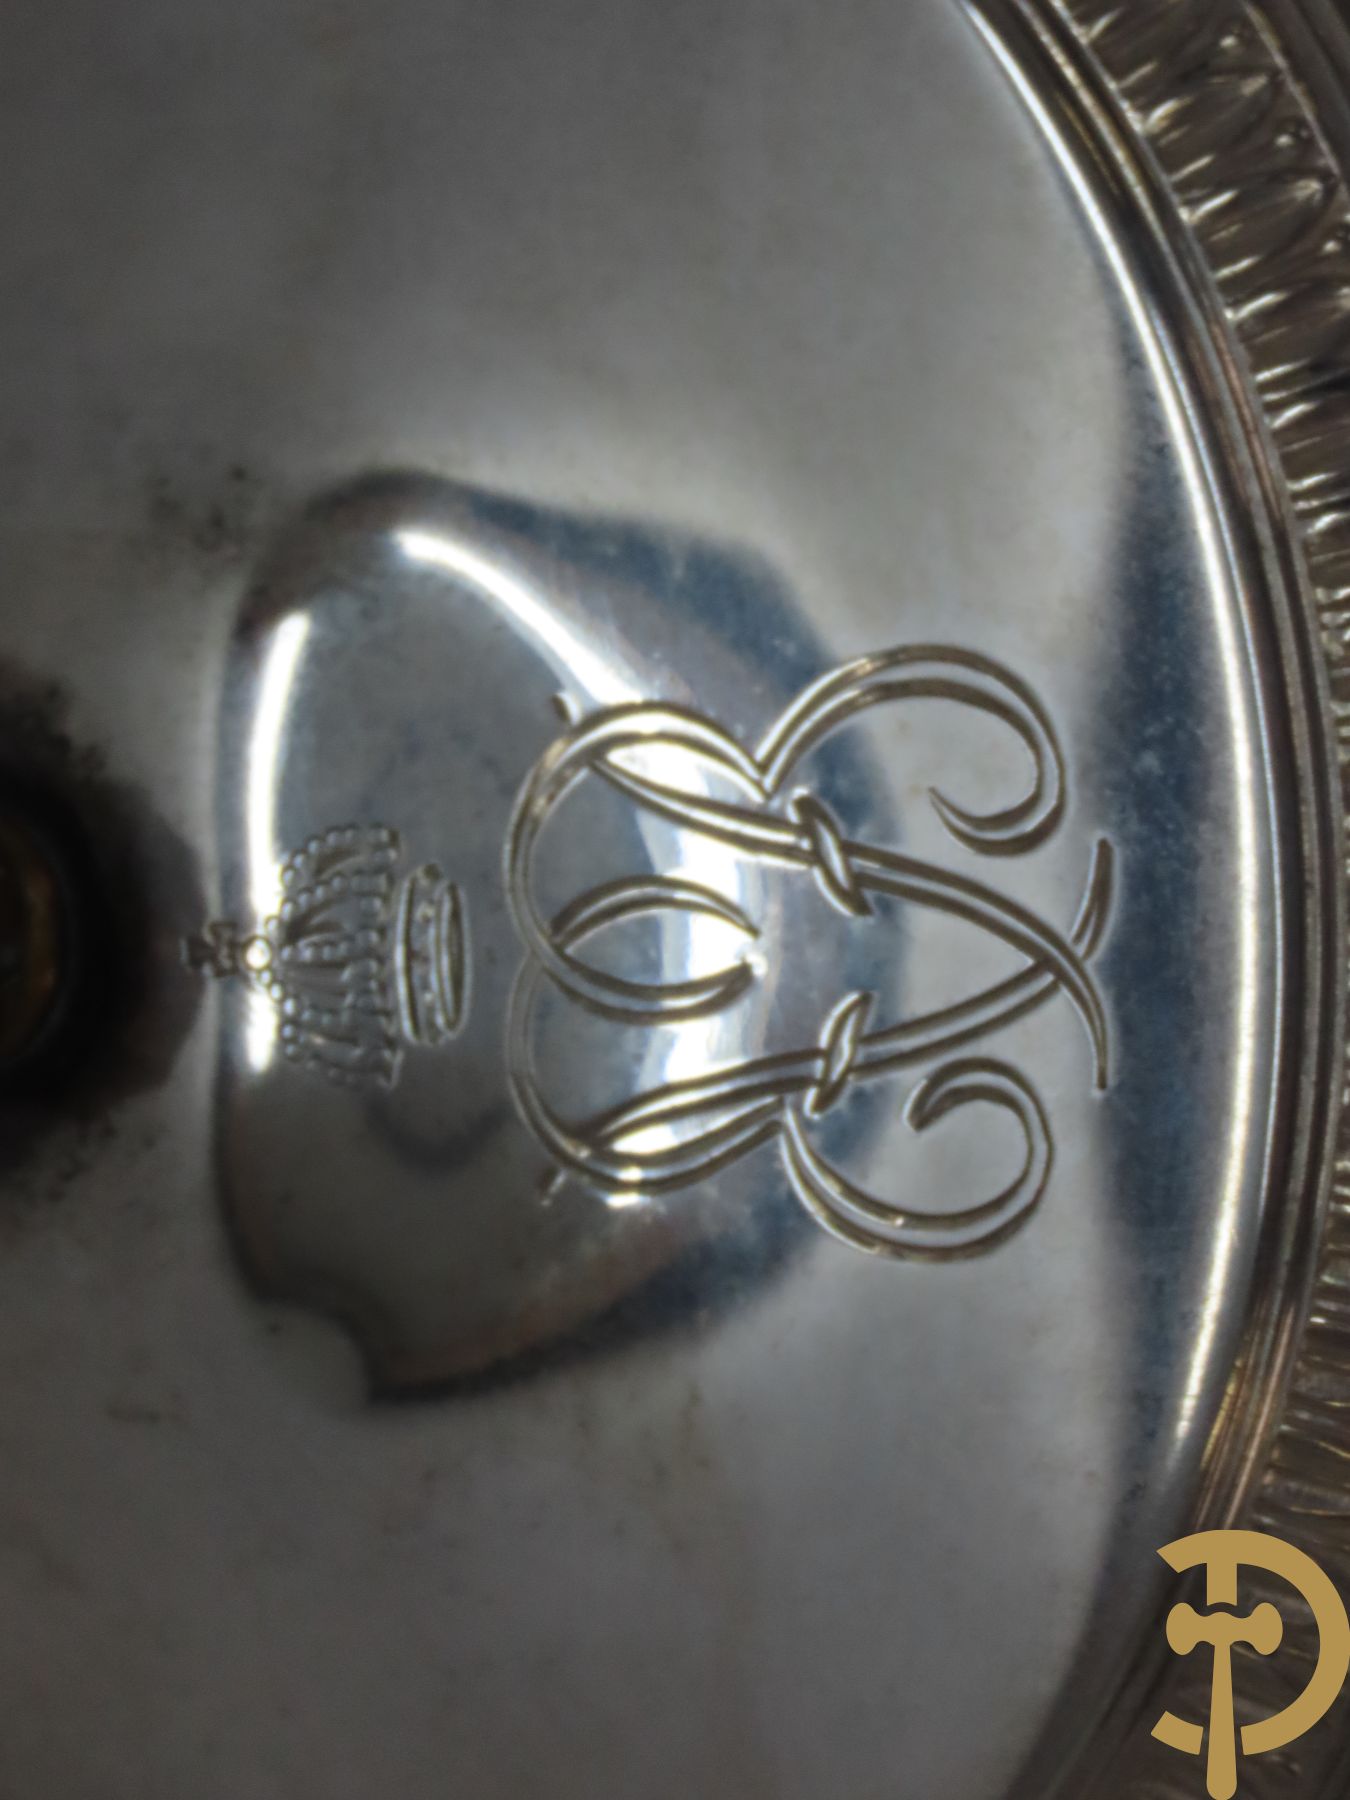 Massief zilveren bonbonnière met gekroonde initialen EVB (Elisabeth Van Beieren?)